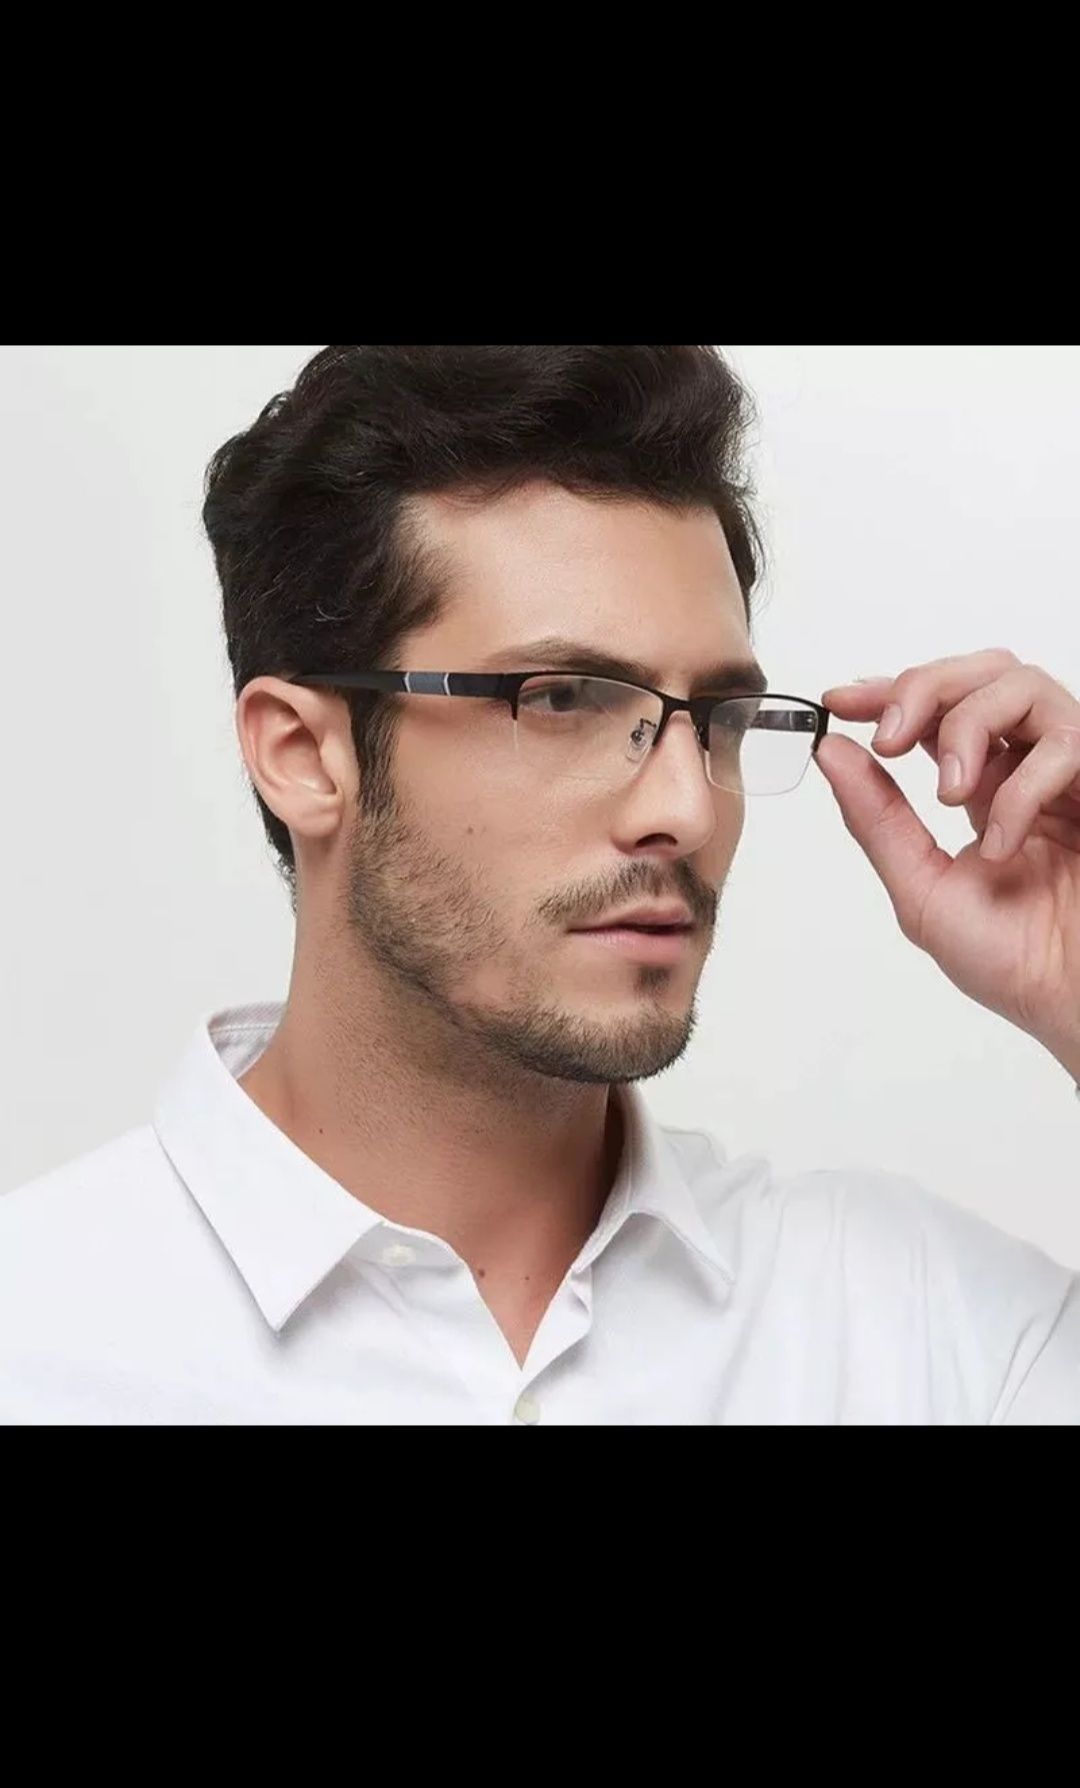 Очки, окуляри для зрения, для дали, близорукости, миопия, минус - 1,5